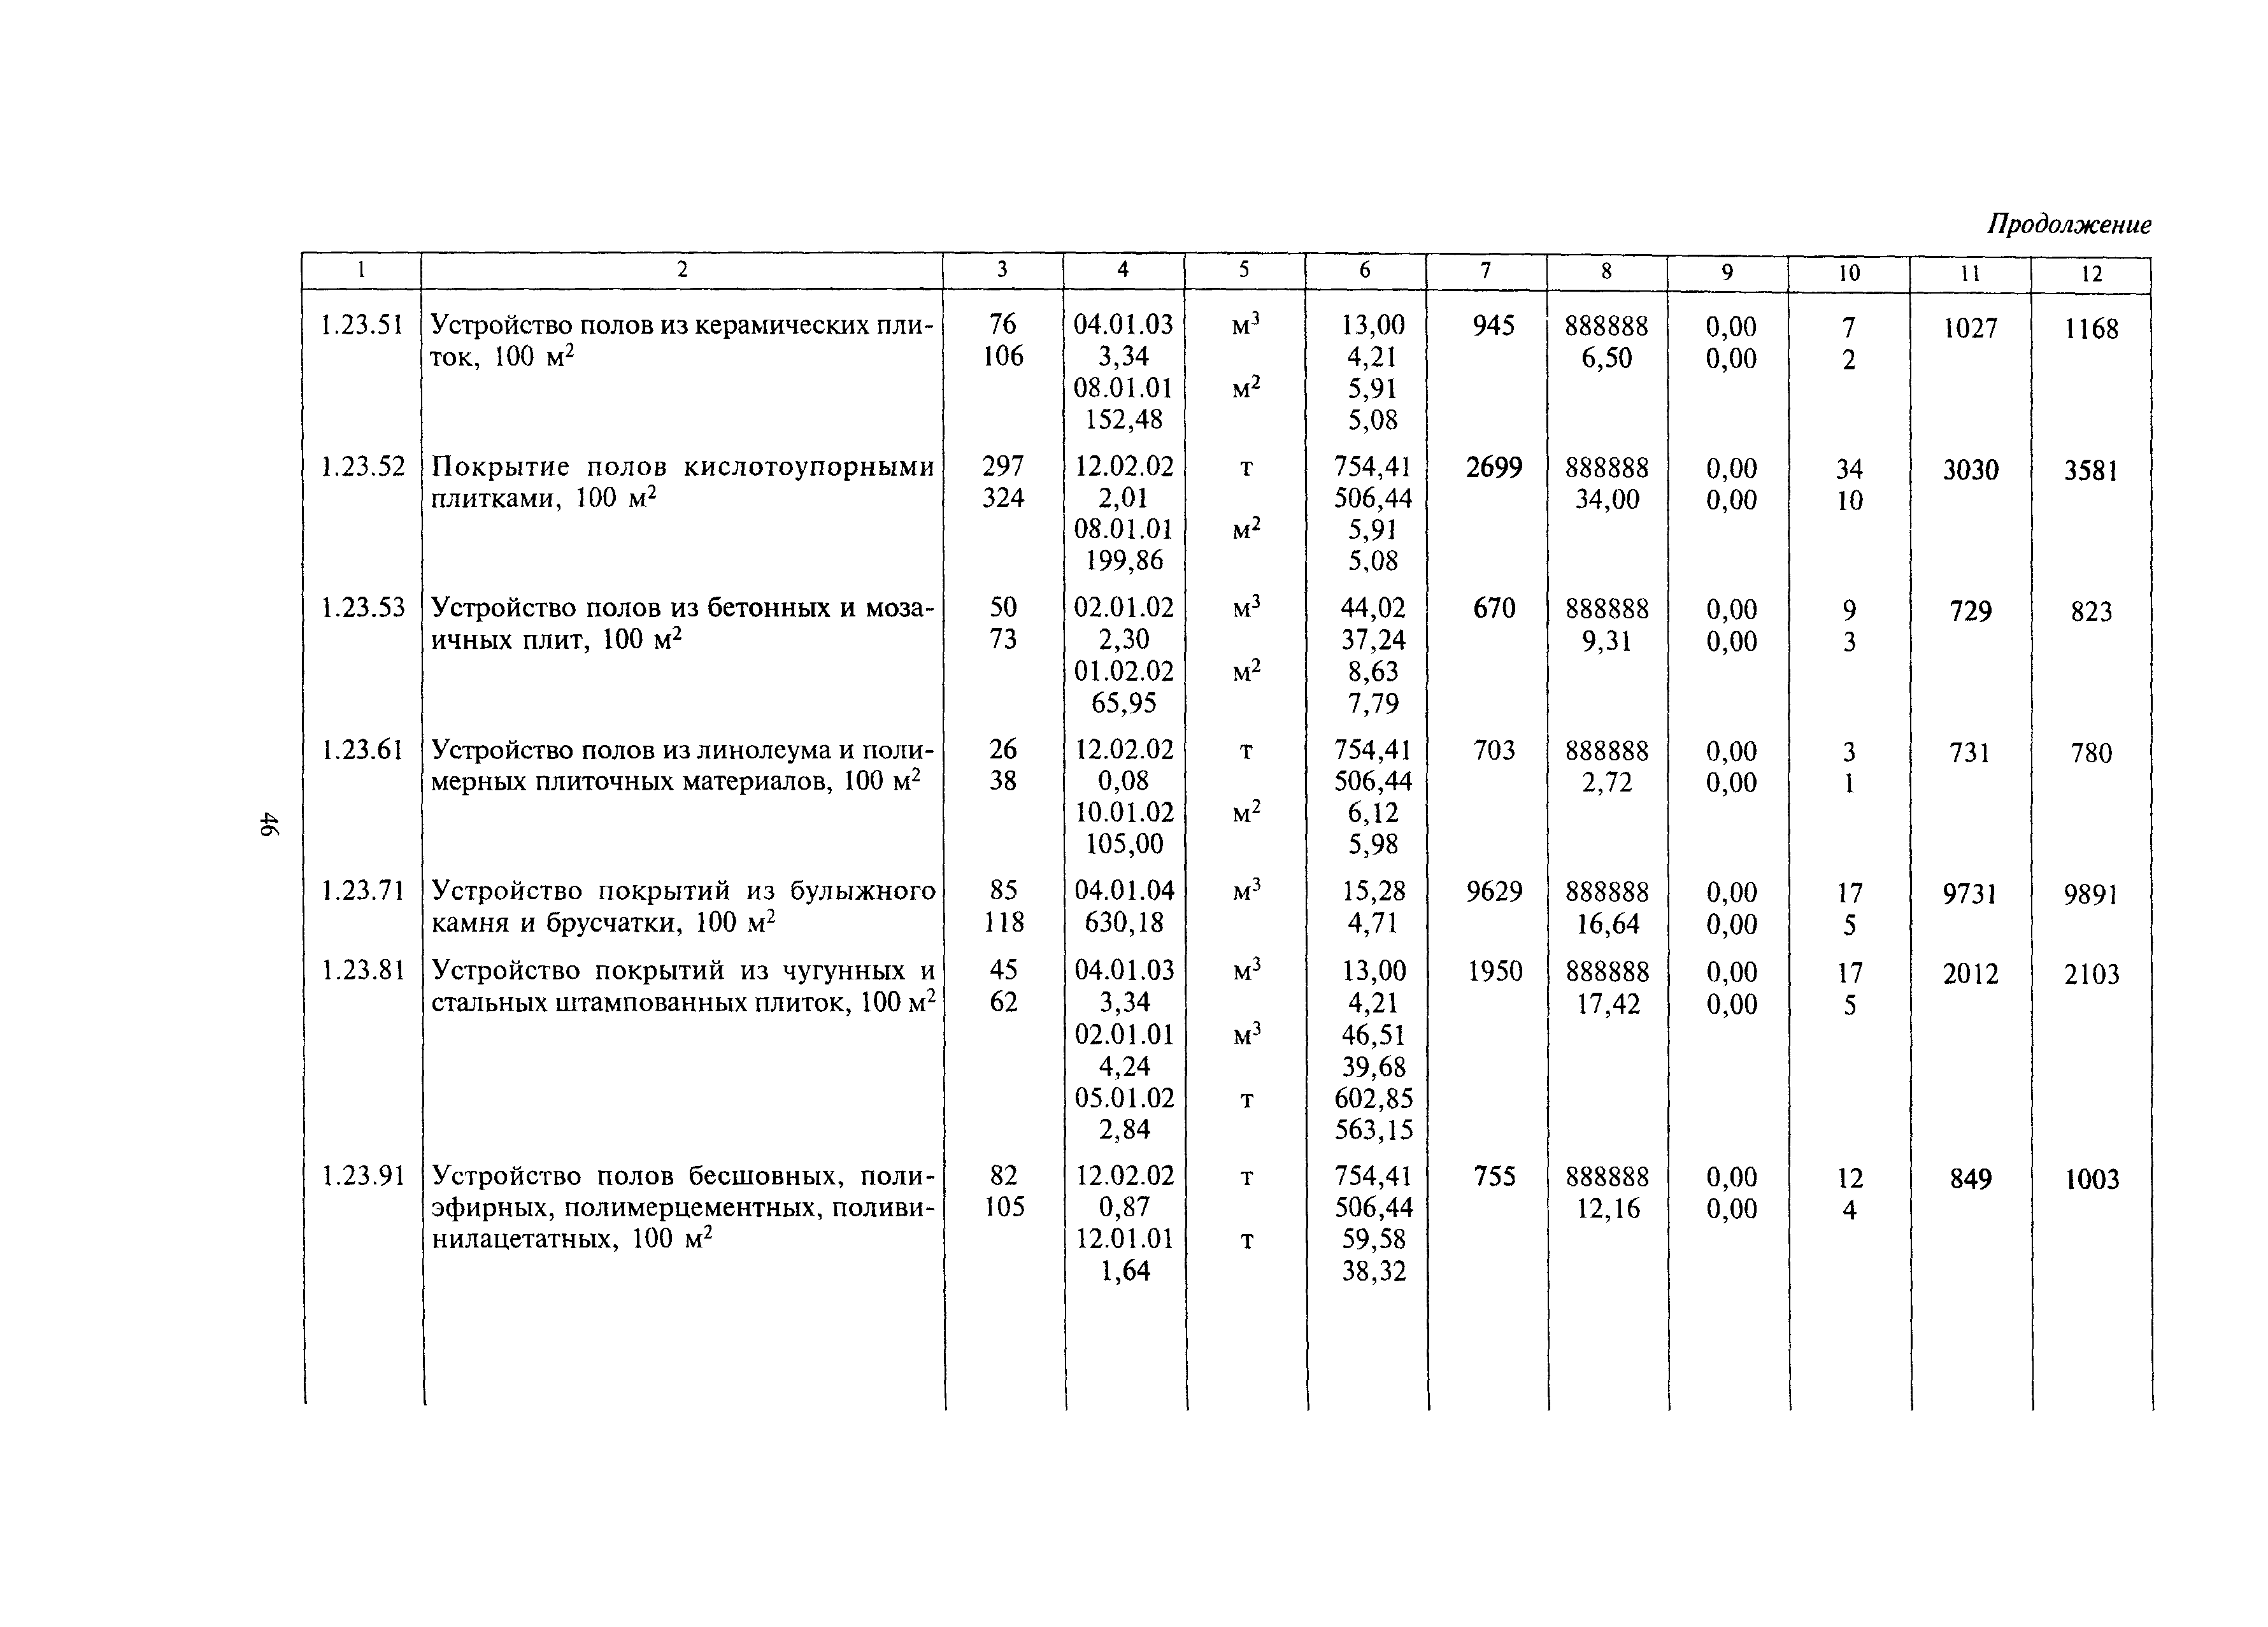 МДС 81-24.2000